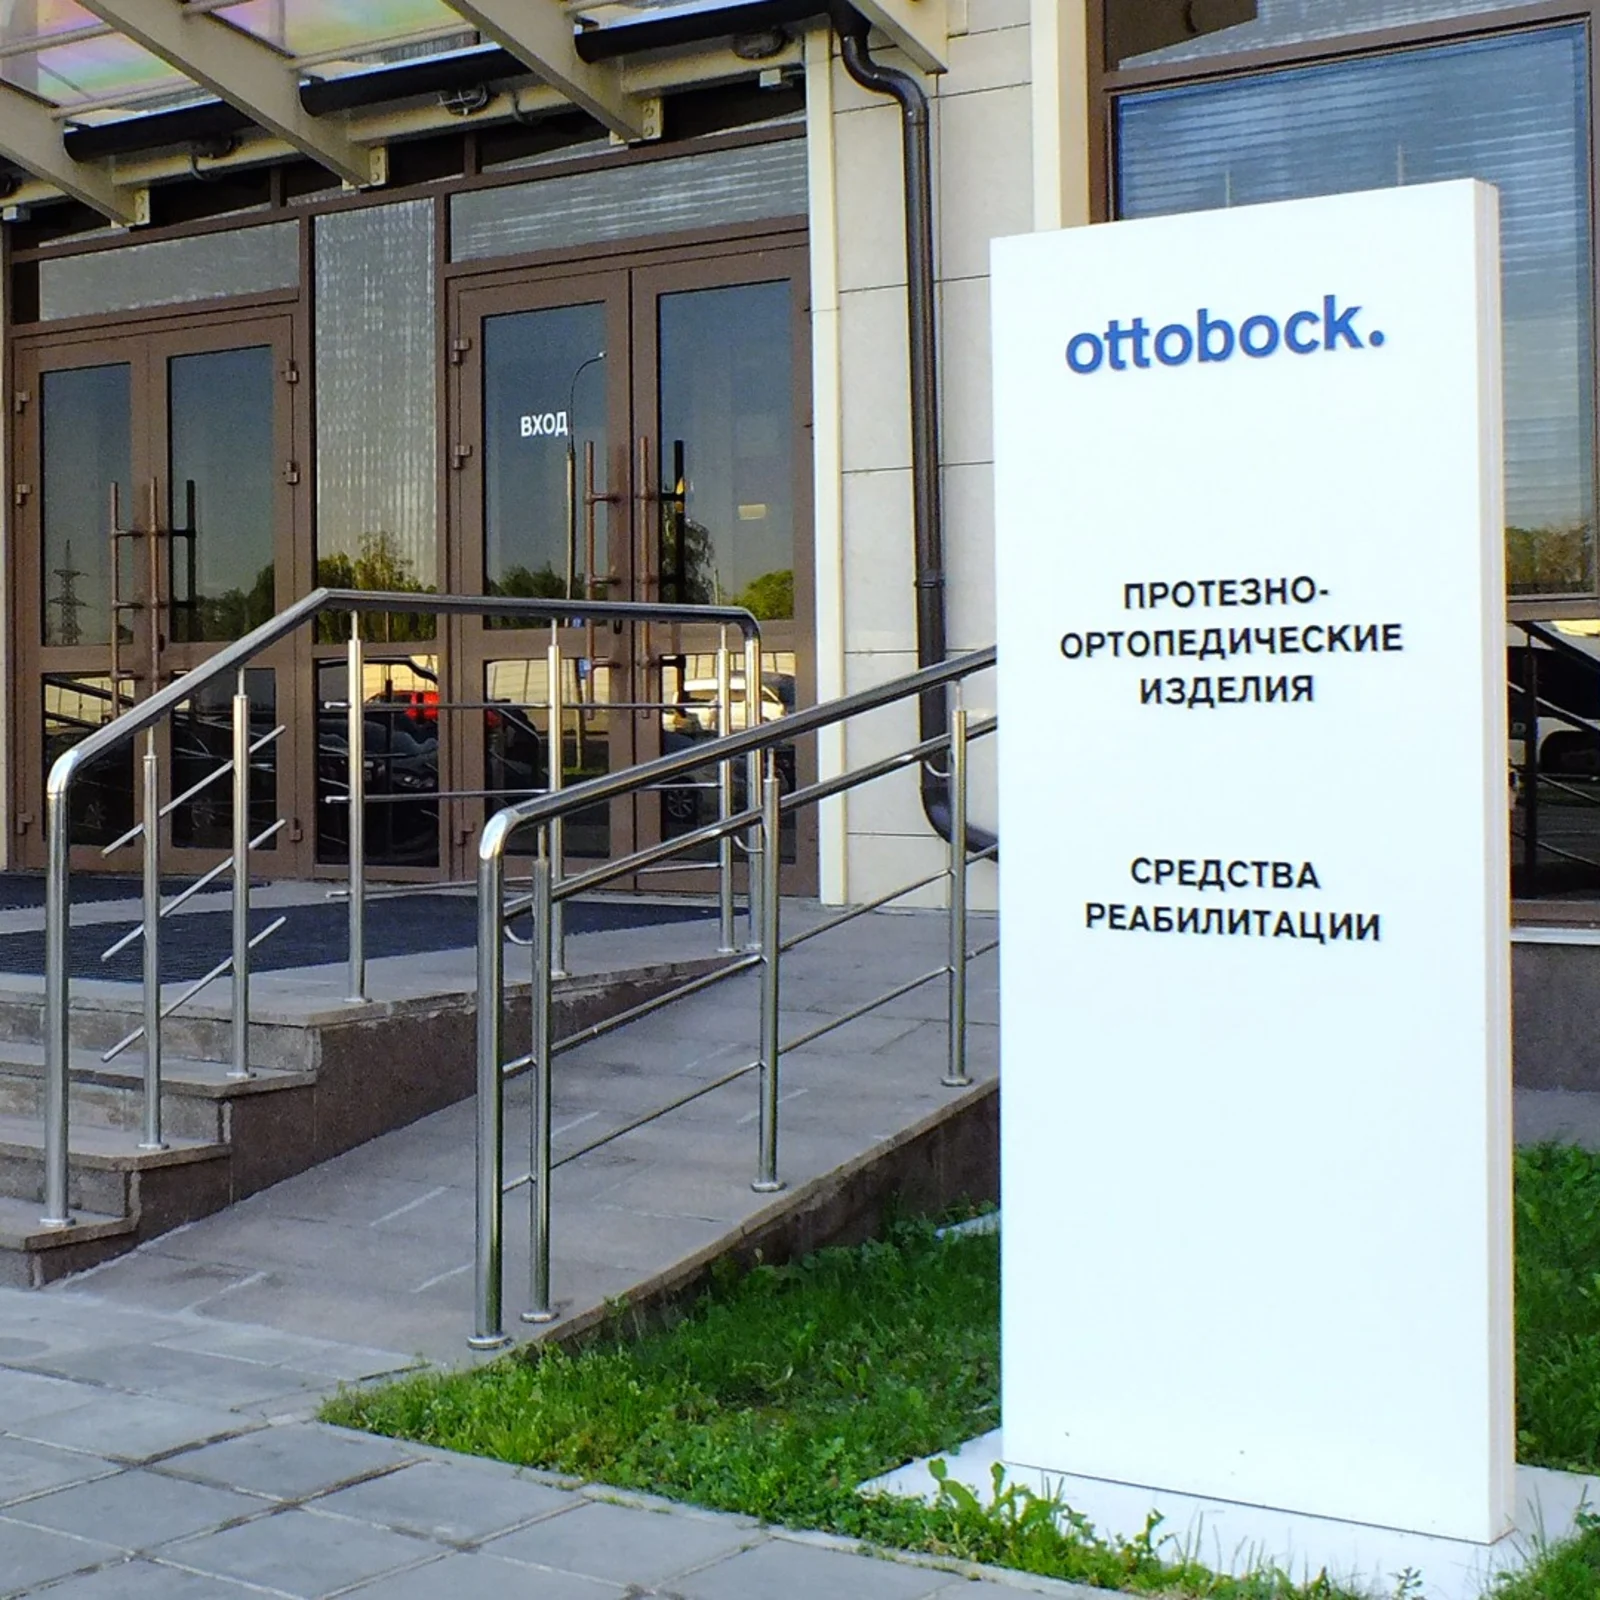 Офис Ottobock в Москве (главный вход)